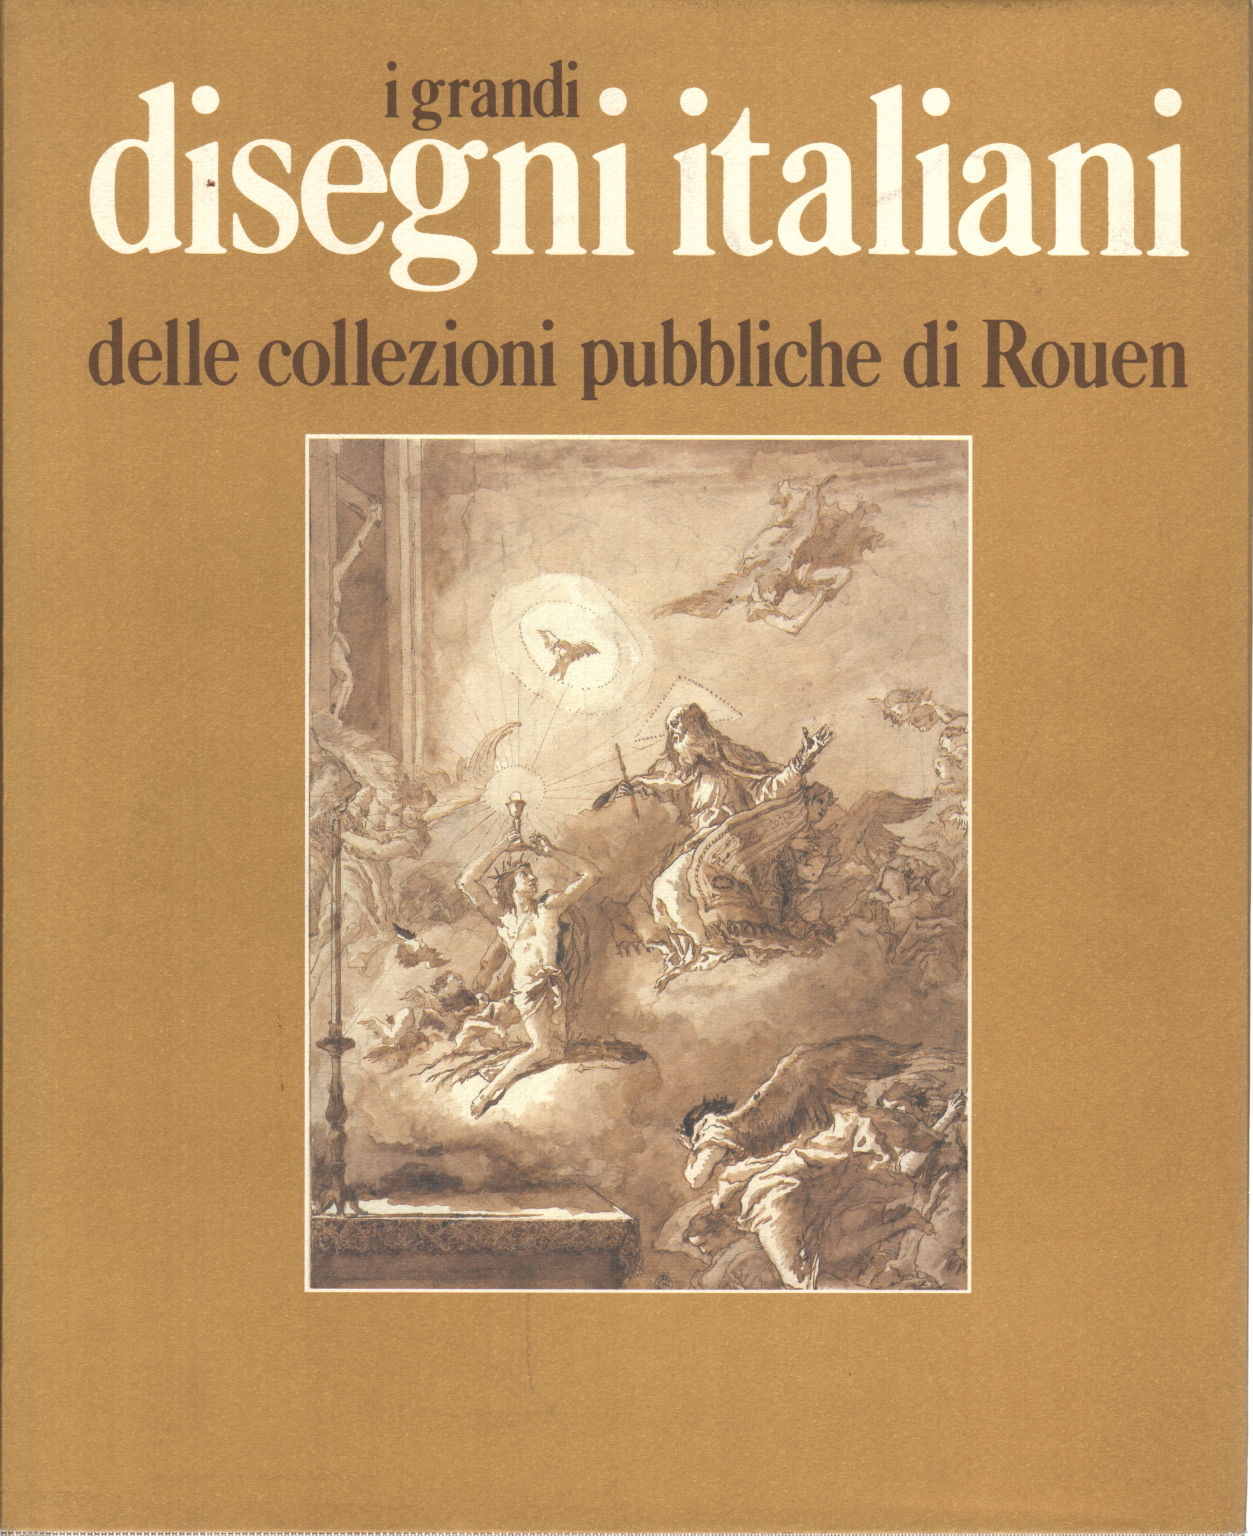 Los grandes dibujos italianos de las colecciones